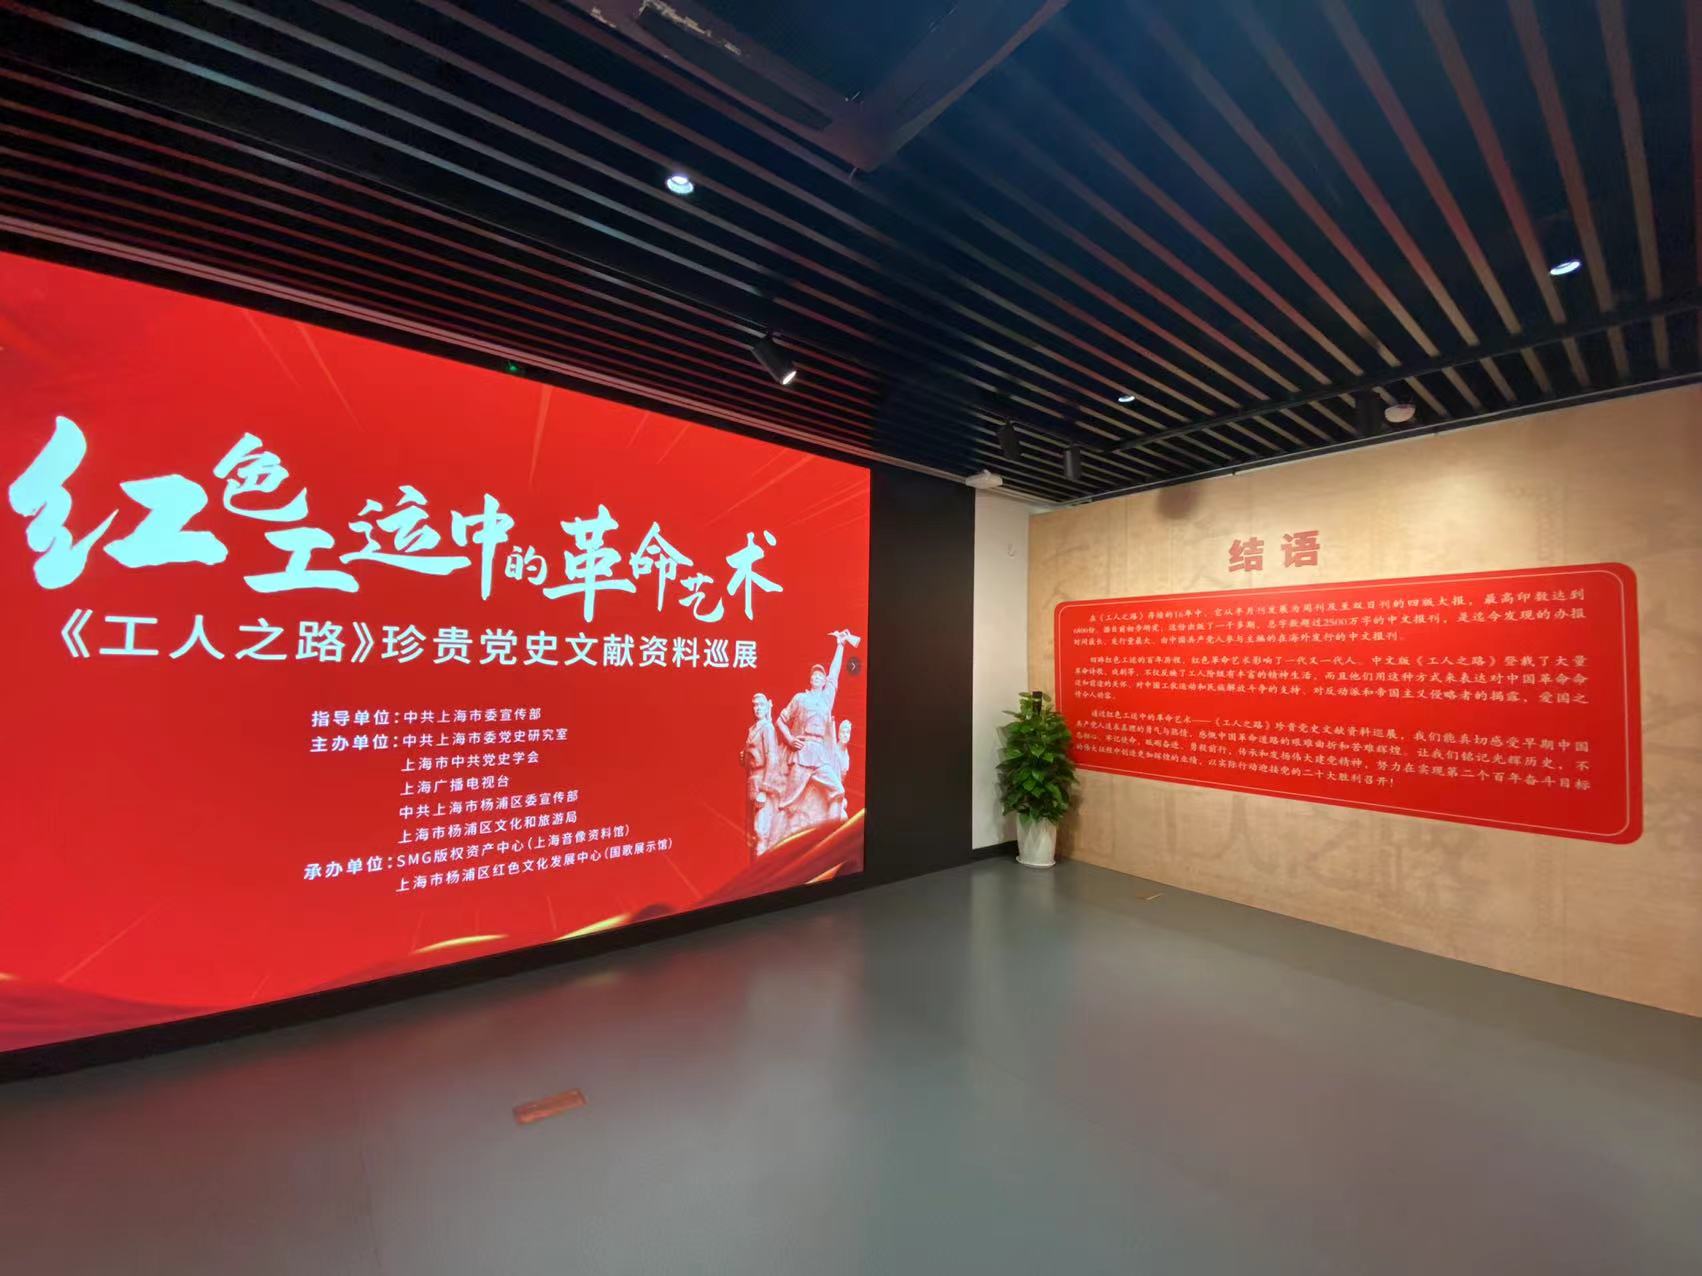 在中国近代工人运动发祥地举办的这场展览中，感受红色工运百年历程